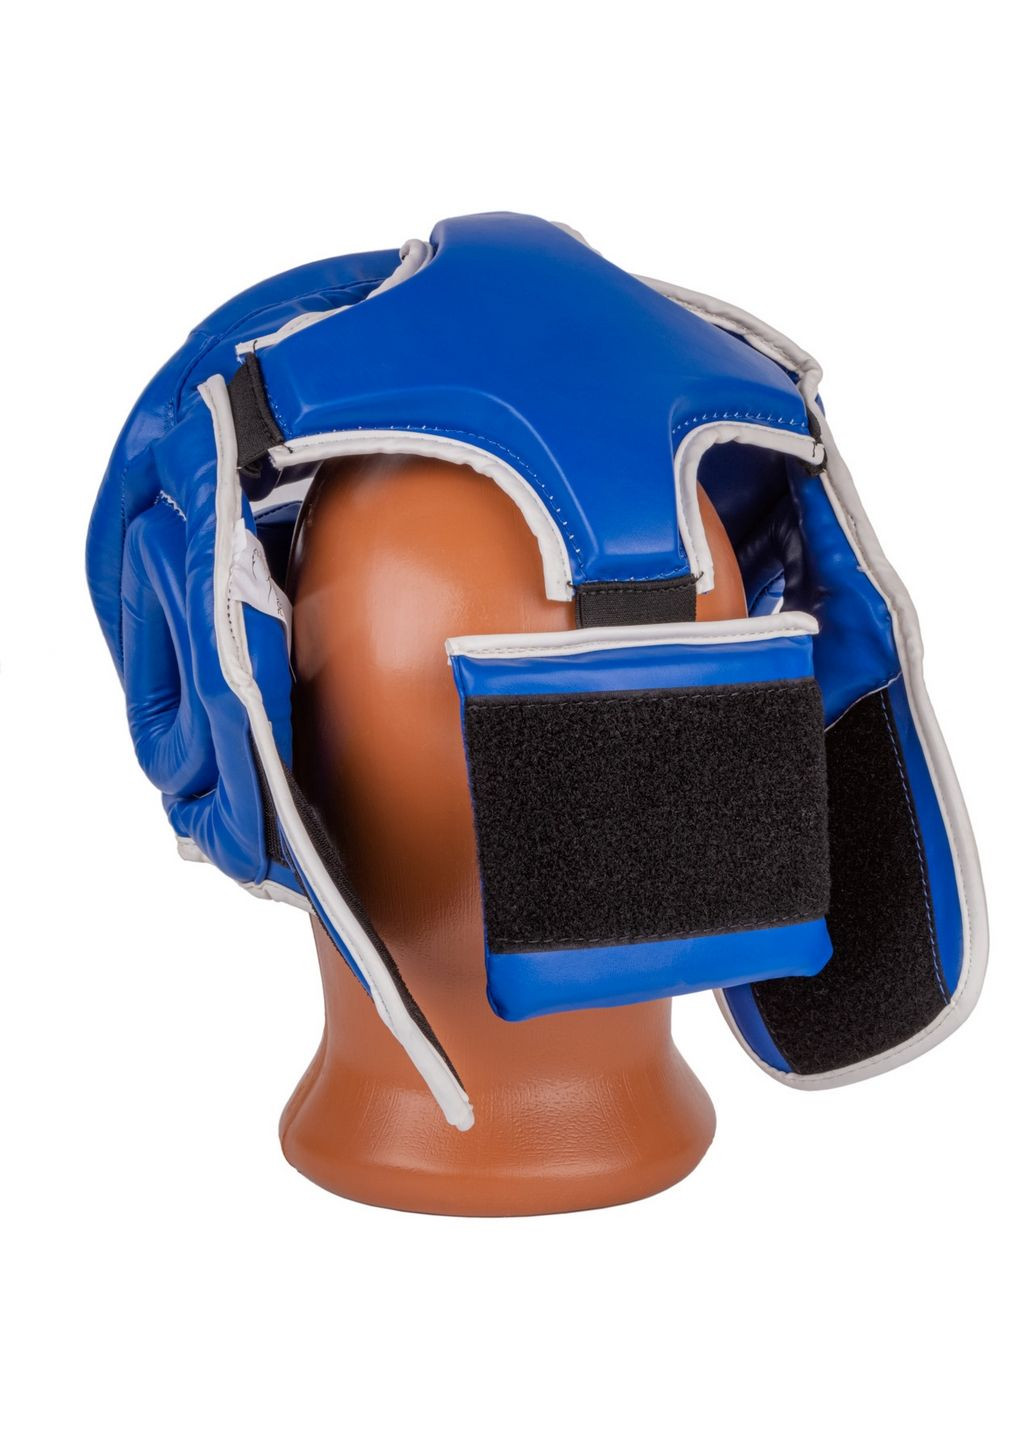 Боксерский шлем тренировочный PowerPlay (282594317)